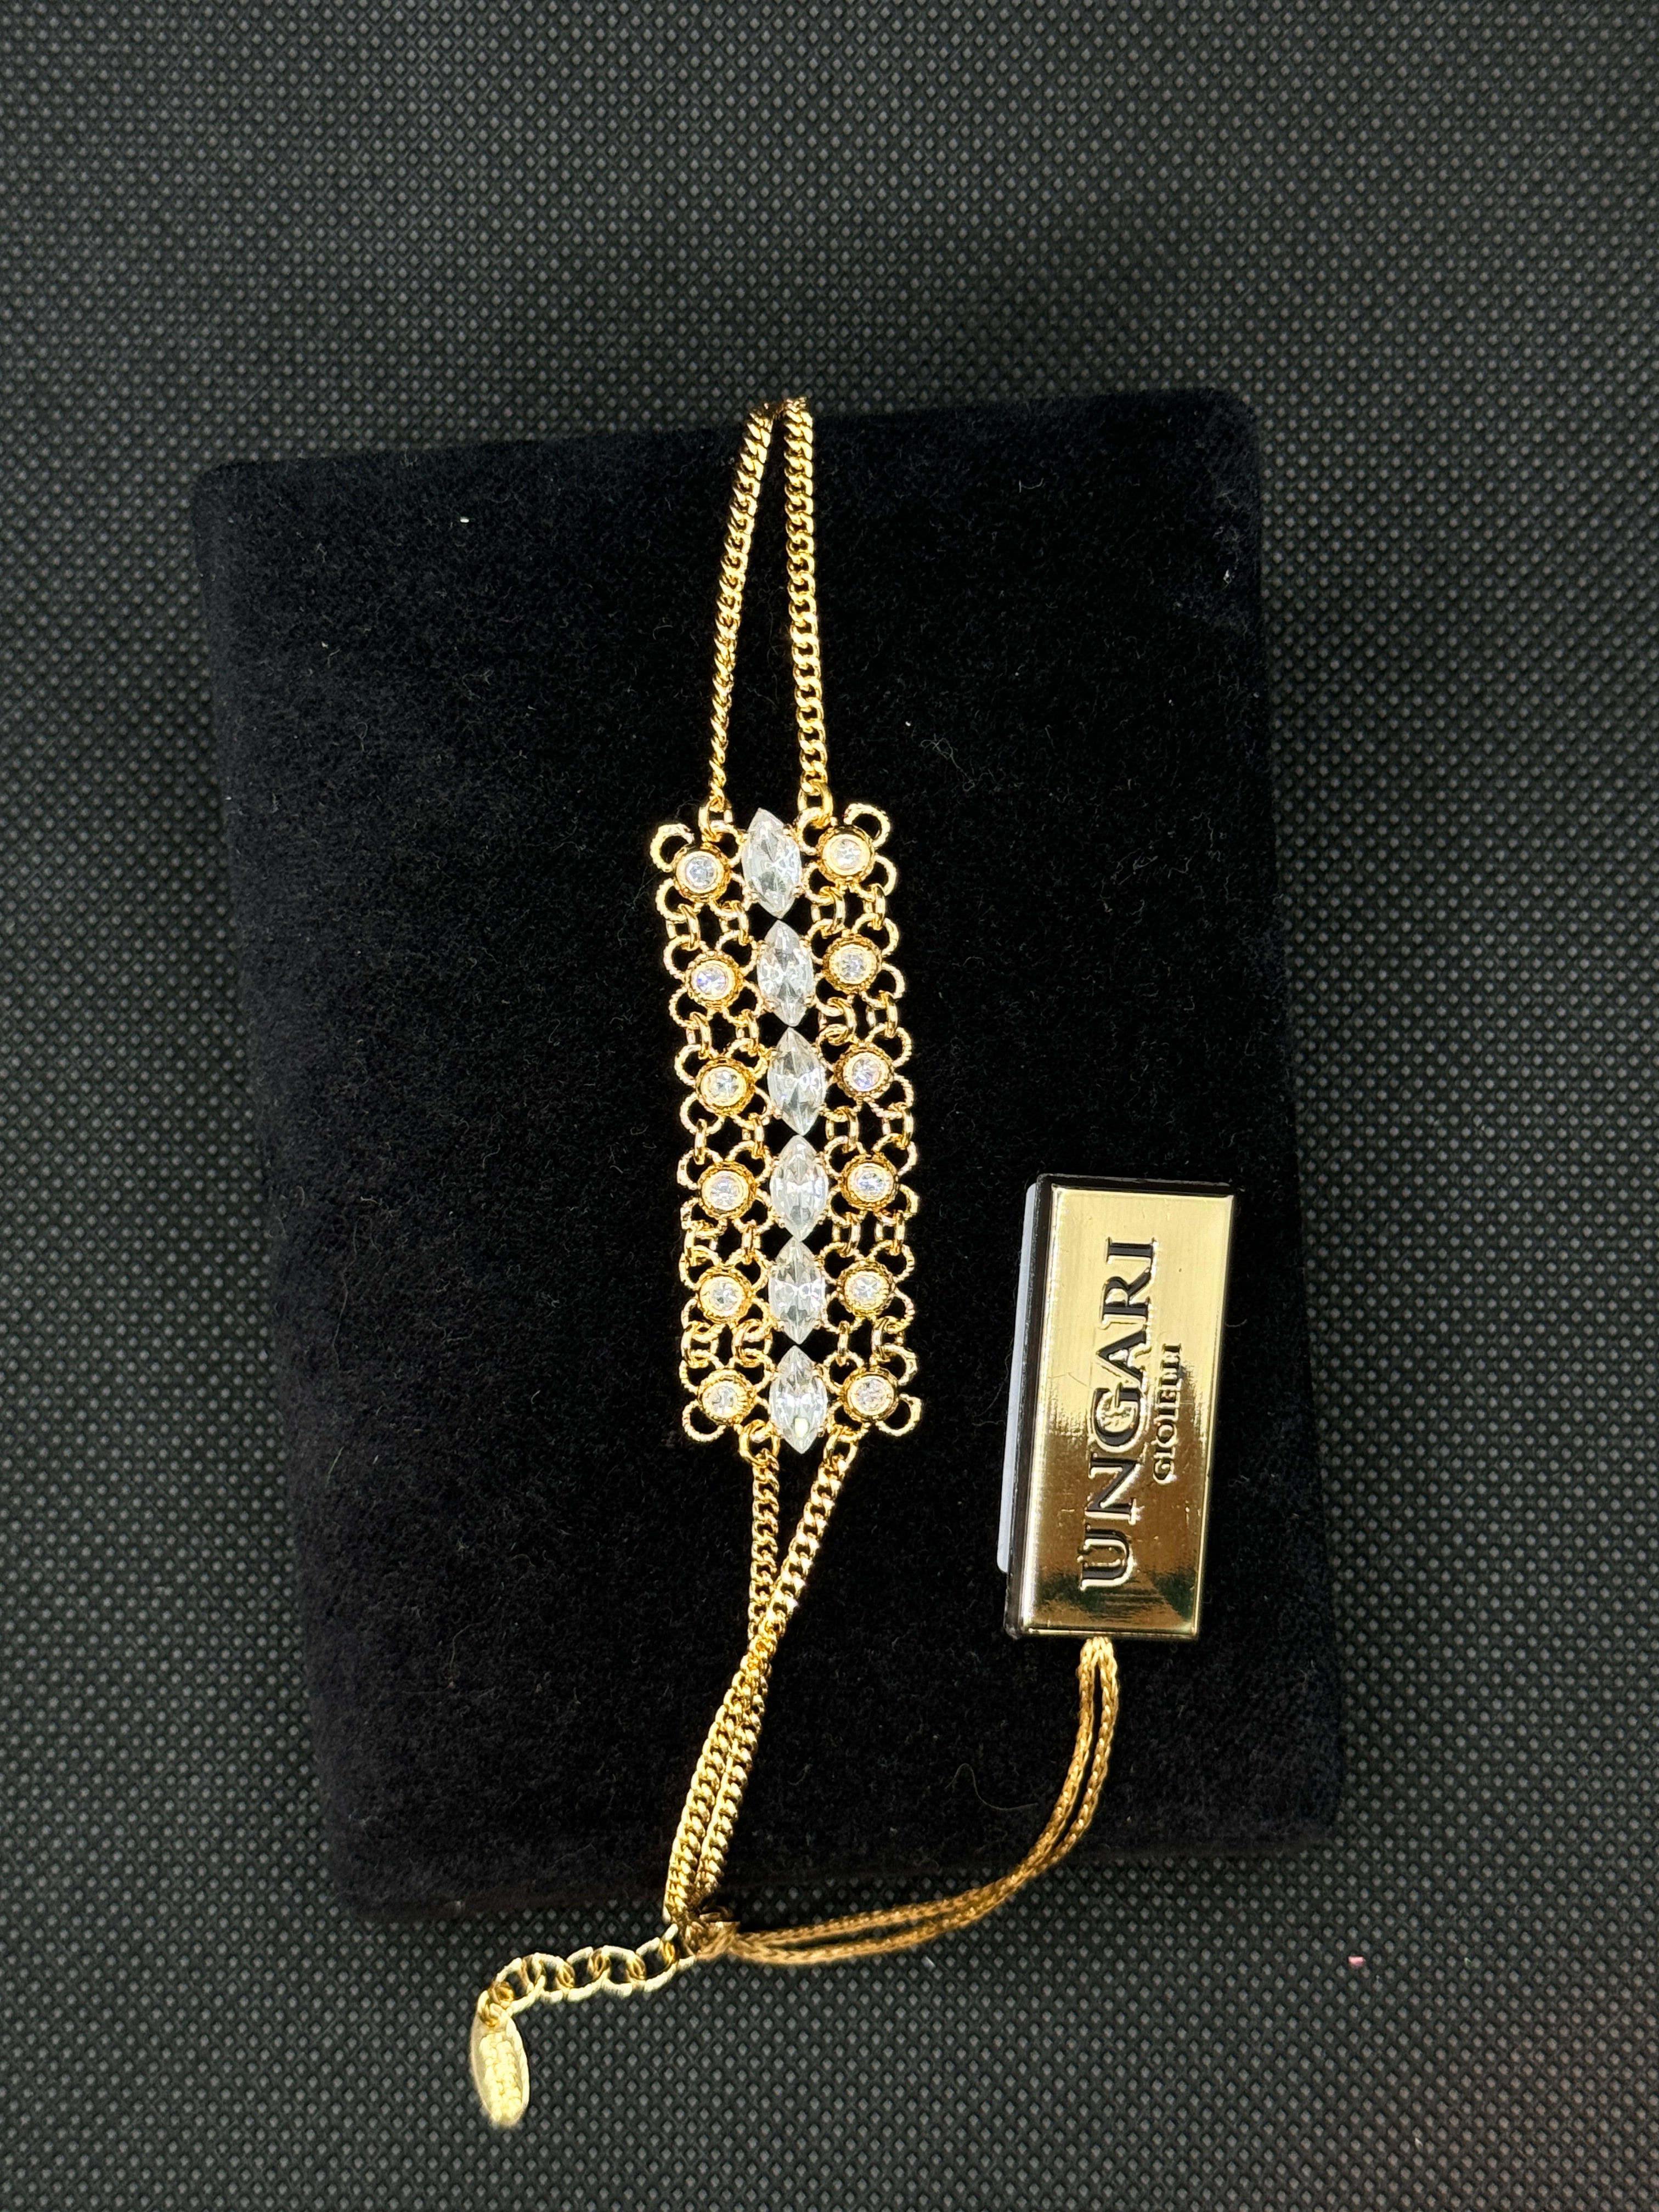 Lorenzo Ungari - Bracelet en bronze doré et zircons - CAMIRE BR 003